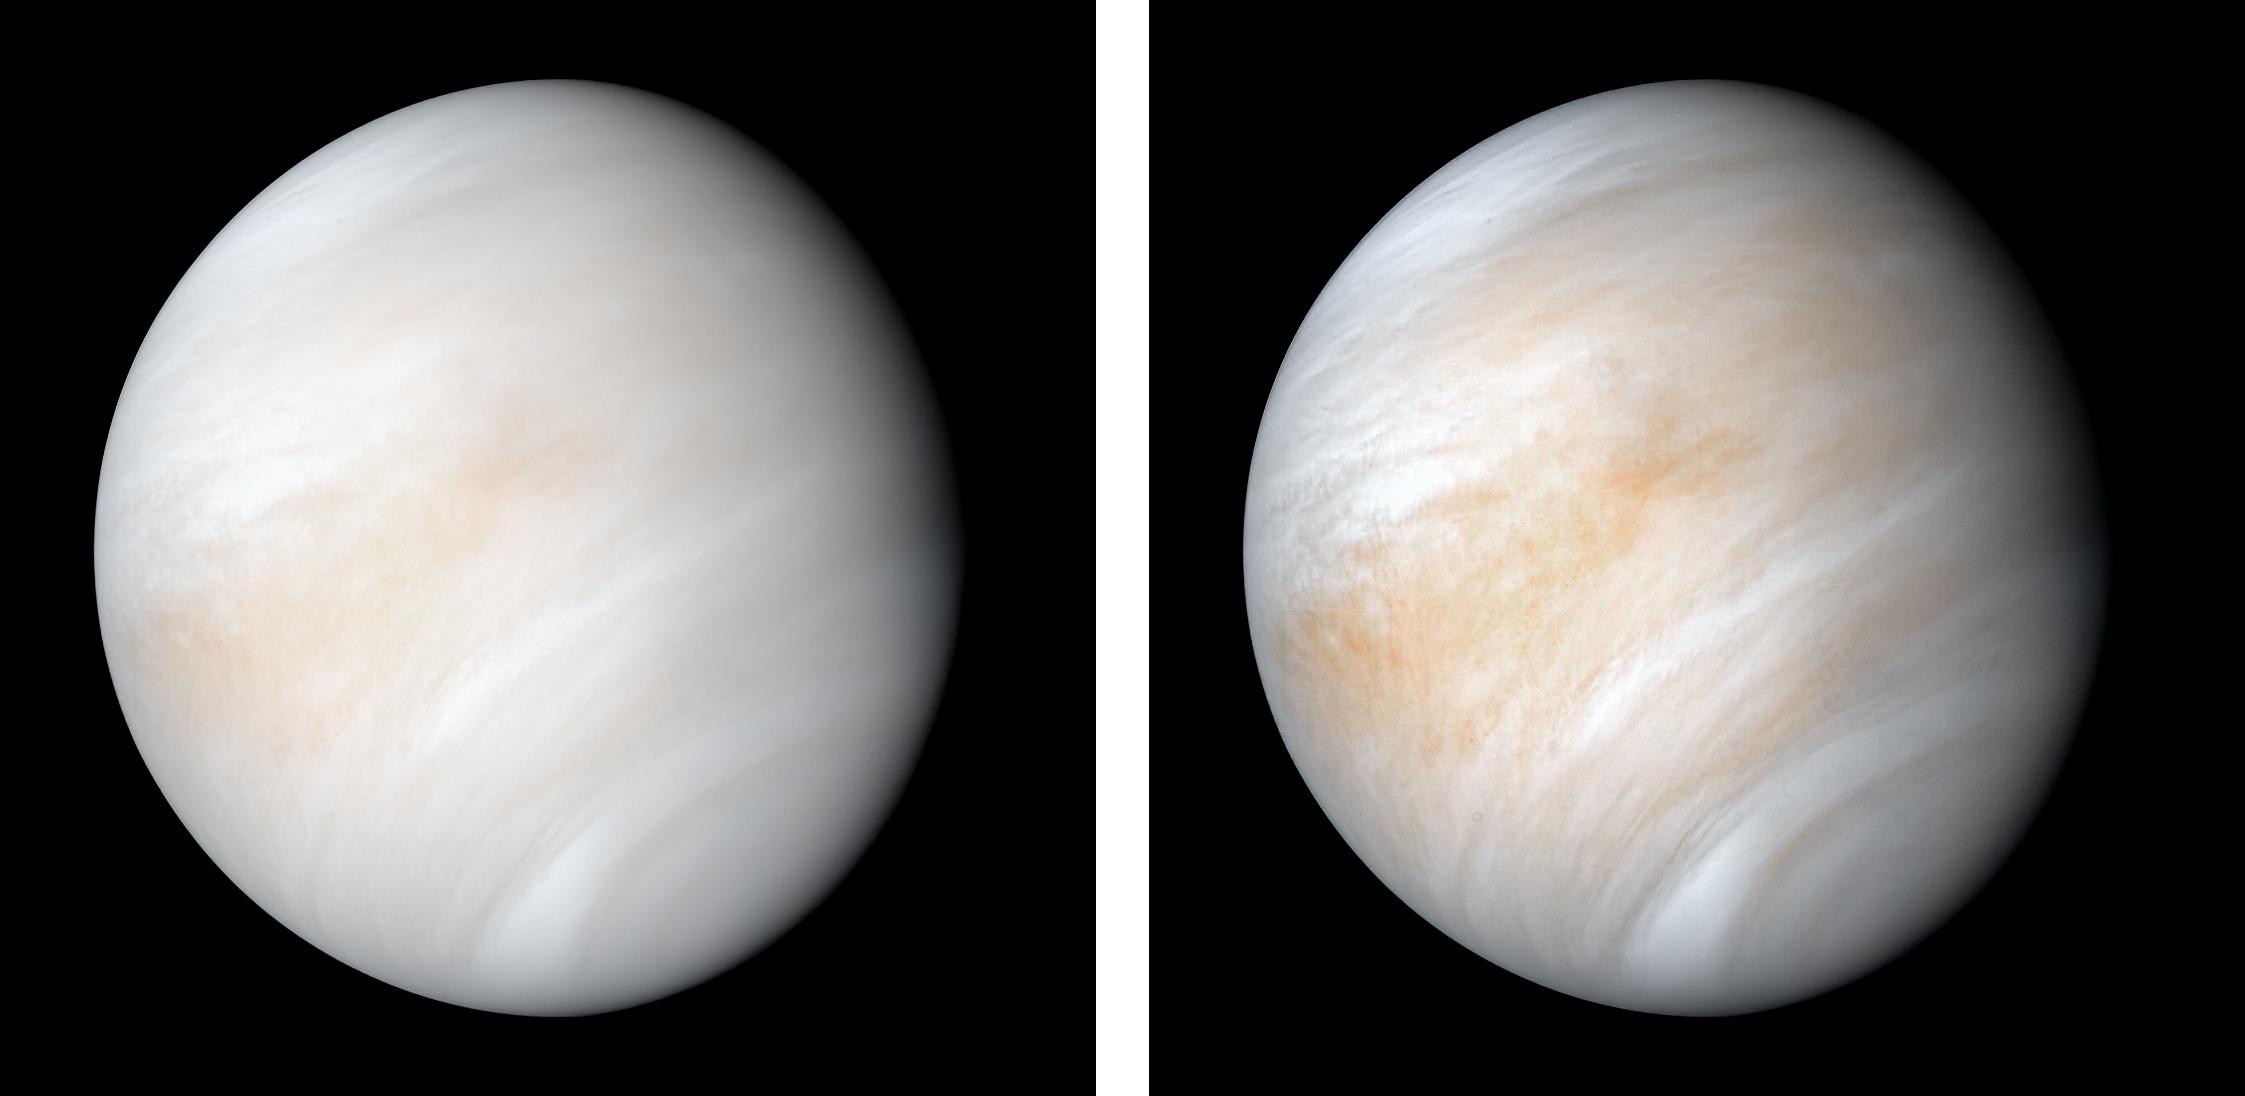 Venus by Mariner 10